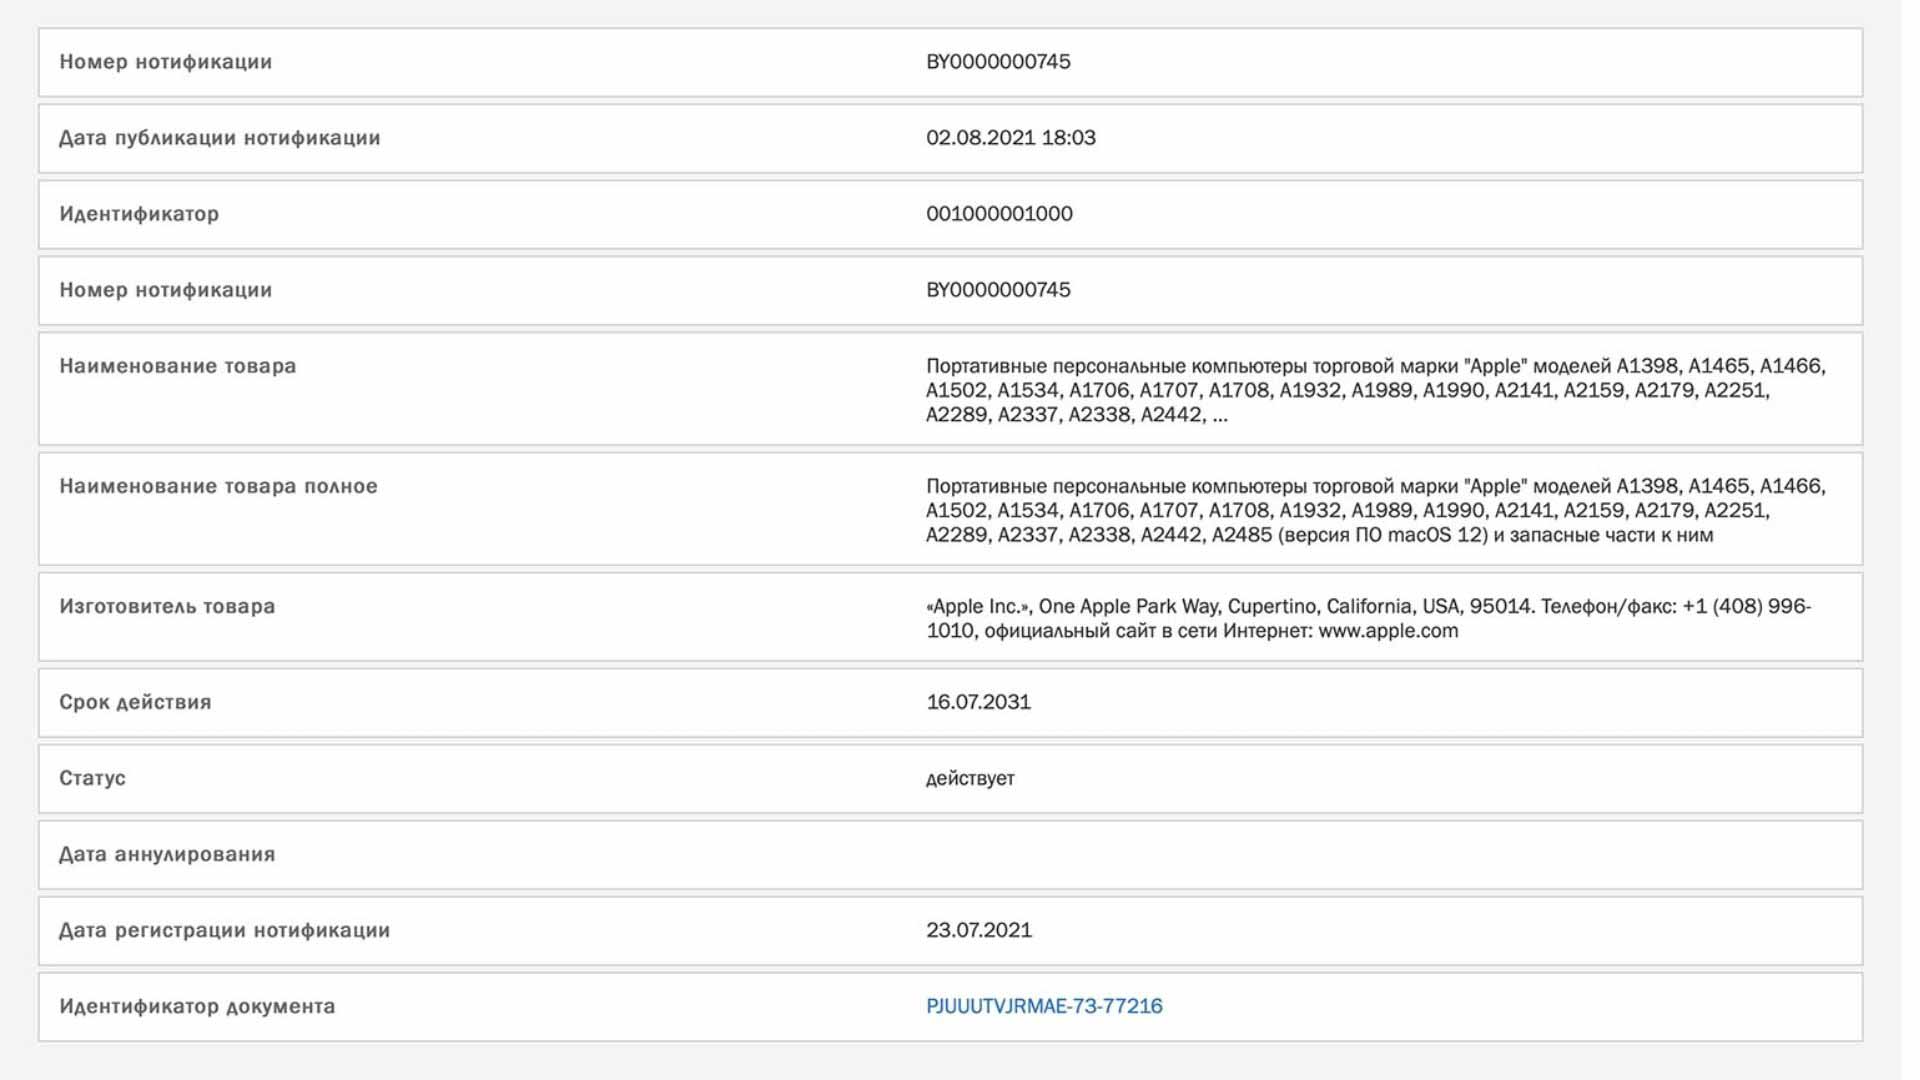 В евразийских нормативных документах были обнаружены новые Mac, вероятно, MacBook Pro с модернизированным дизайном M1X